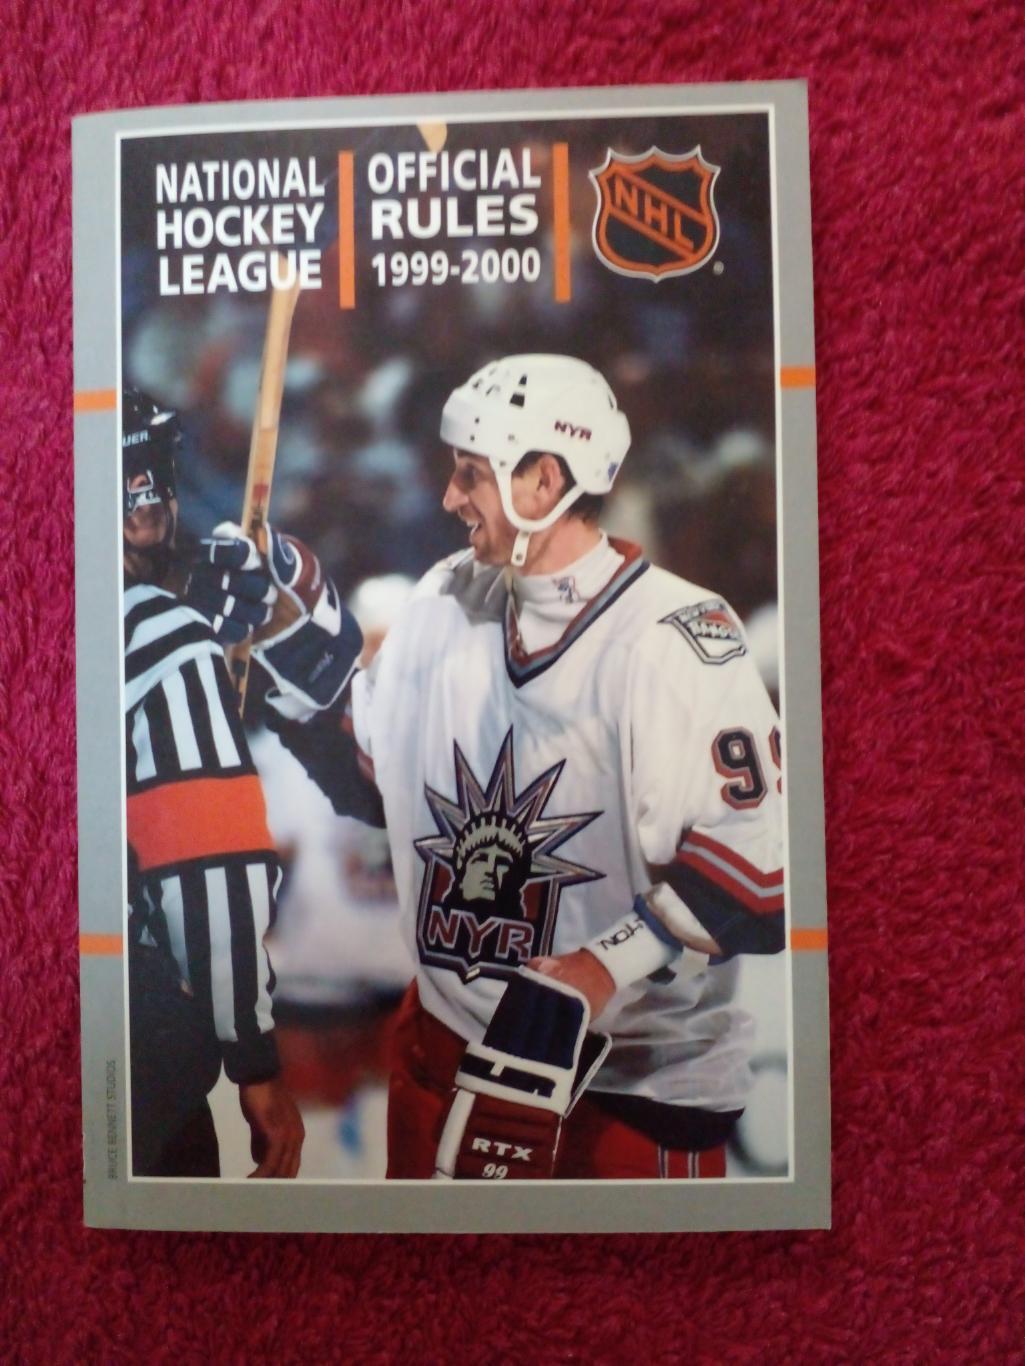 Справочник Хоккей НХЛ OFFICIAL RULES 1999-2000. Обложка - Уэйн Гретцки